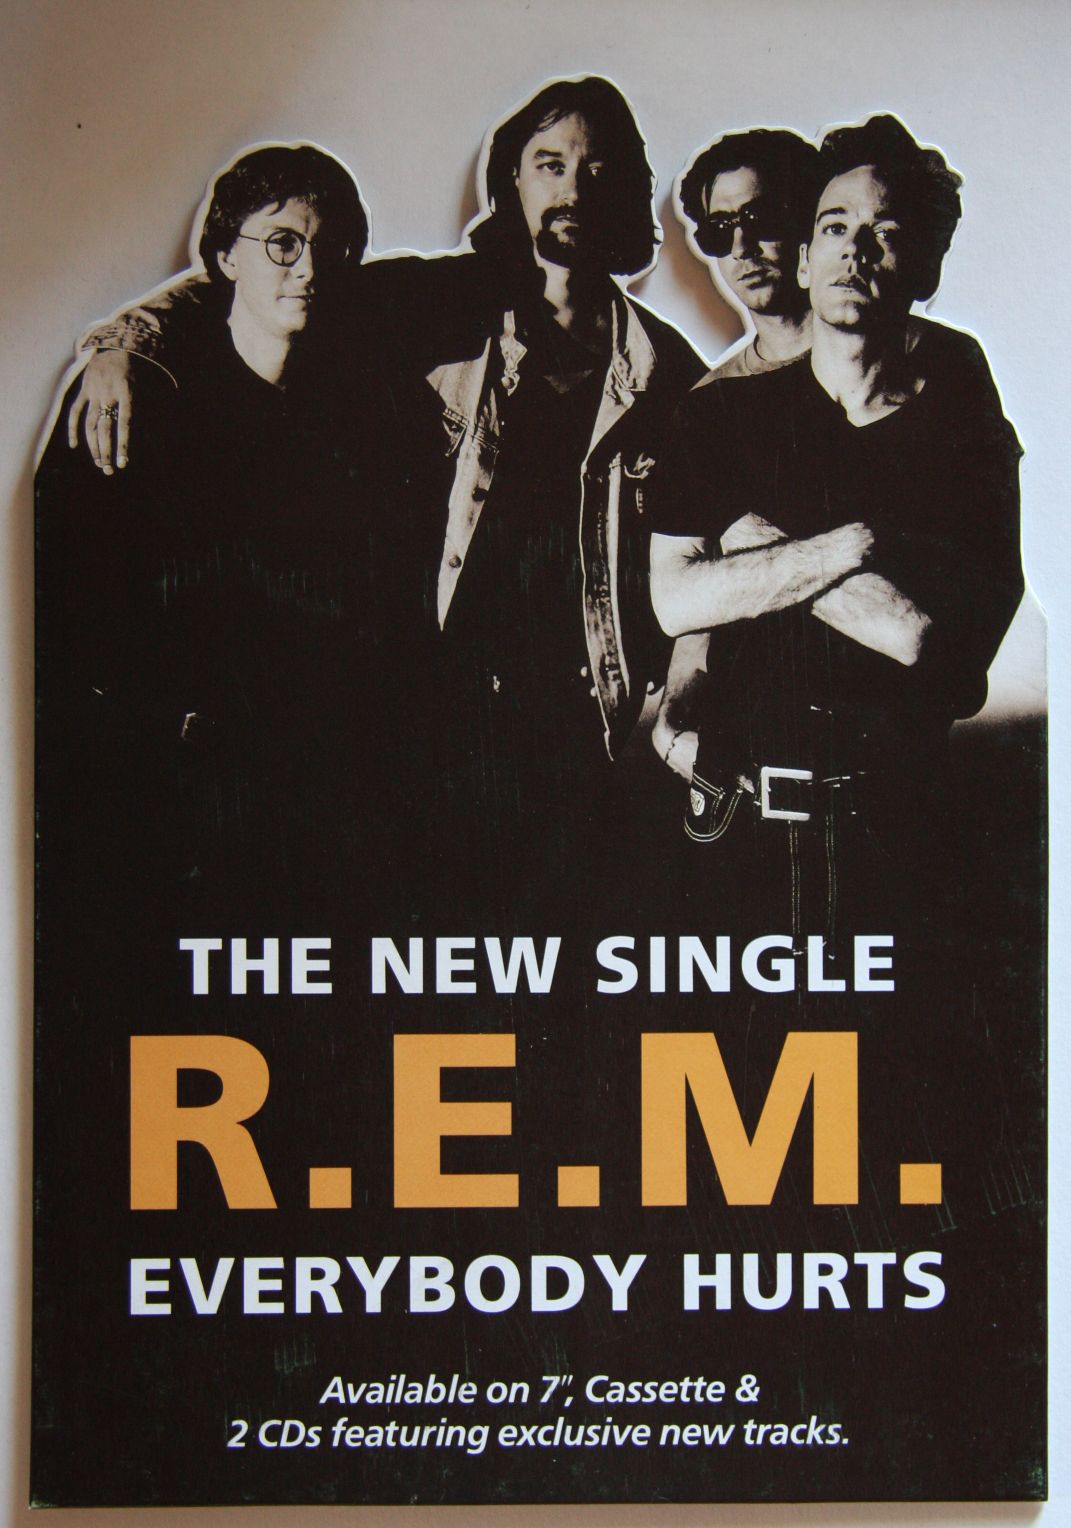 Everybody hurts. R.E.M. - Everybody hurts. Rem Everybody hurts. R.E.M album. Hurts обложки.